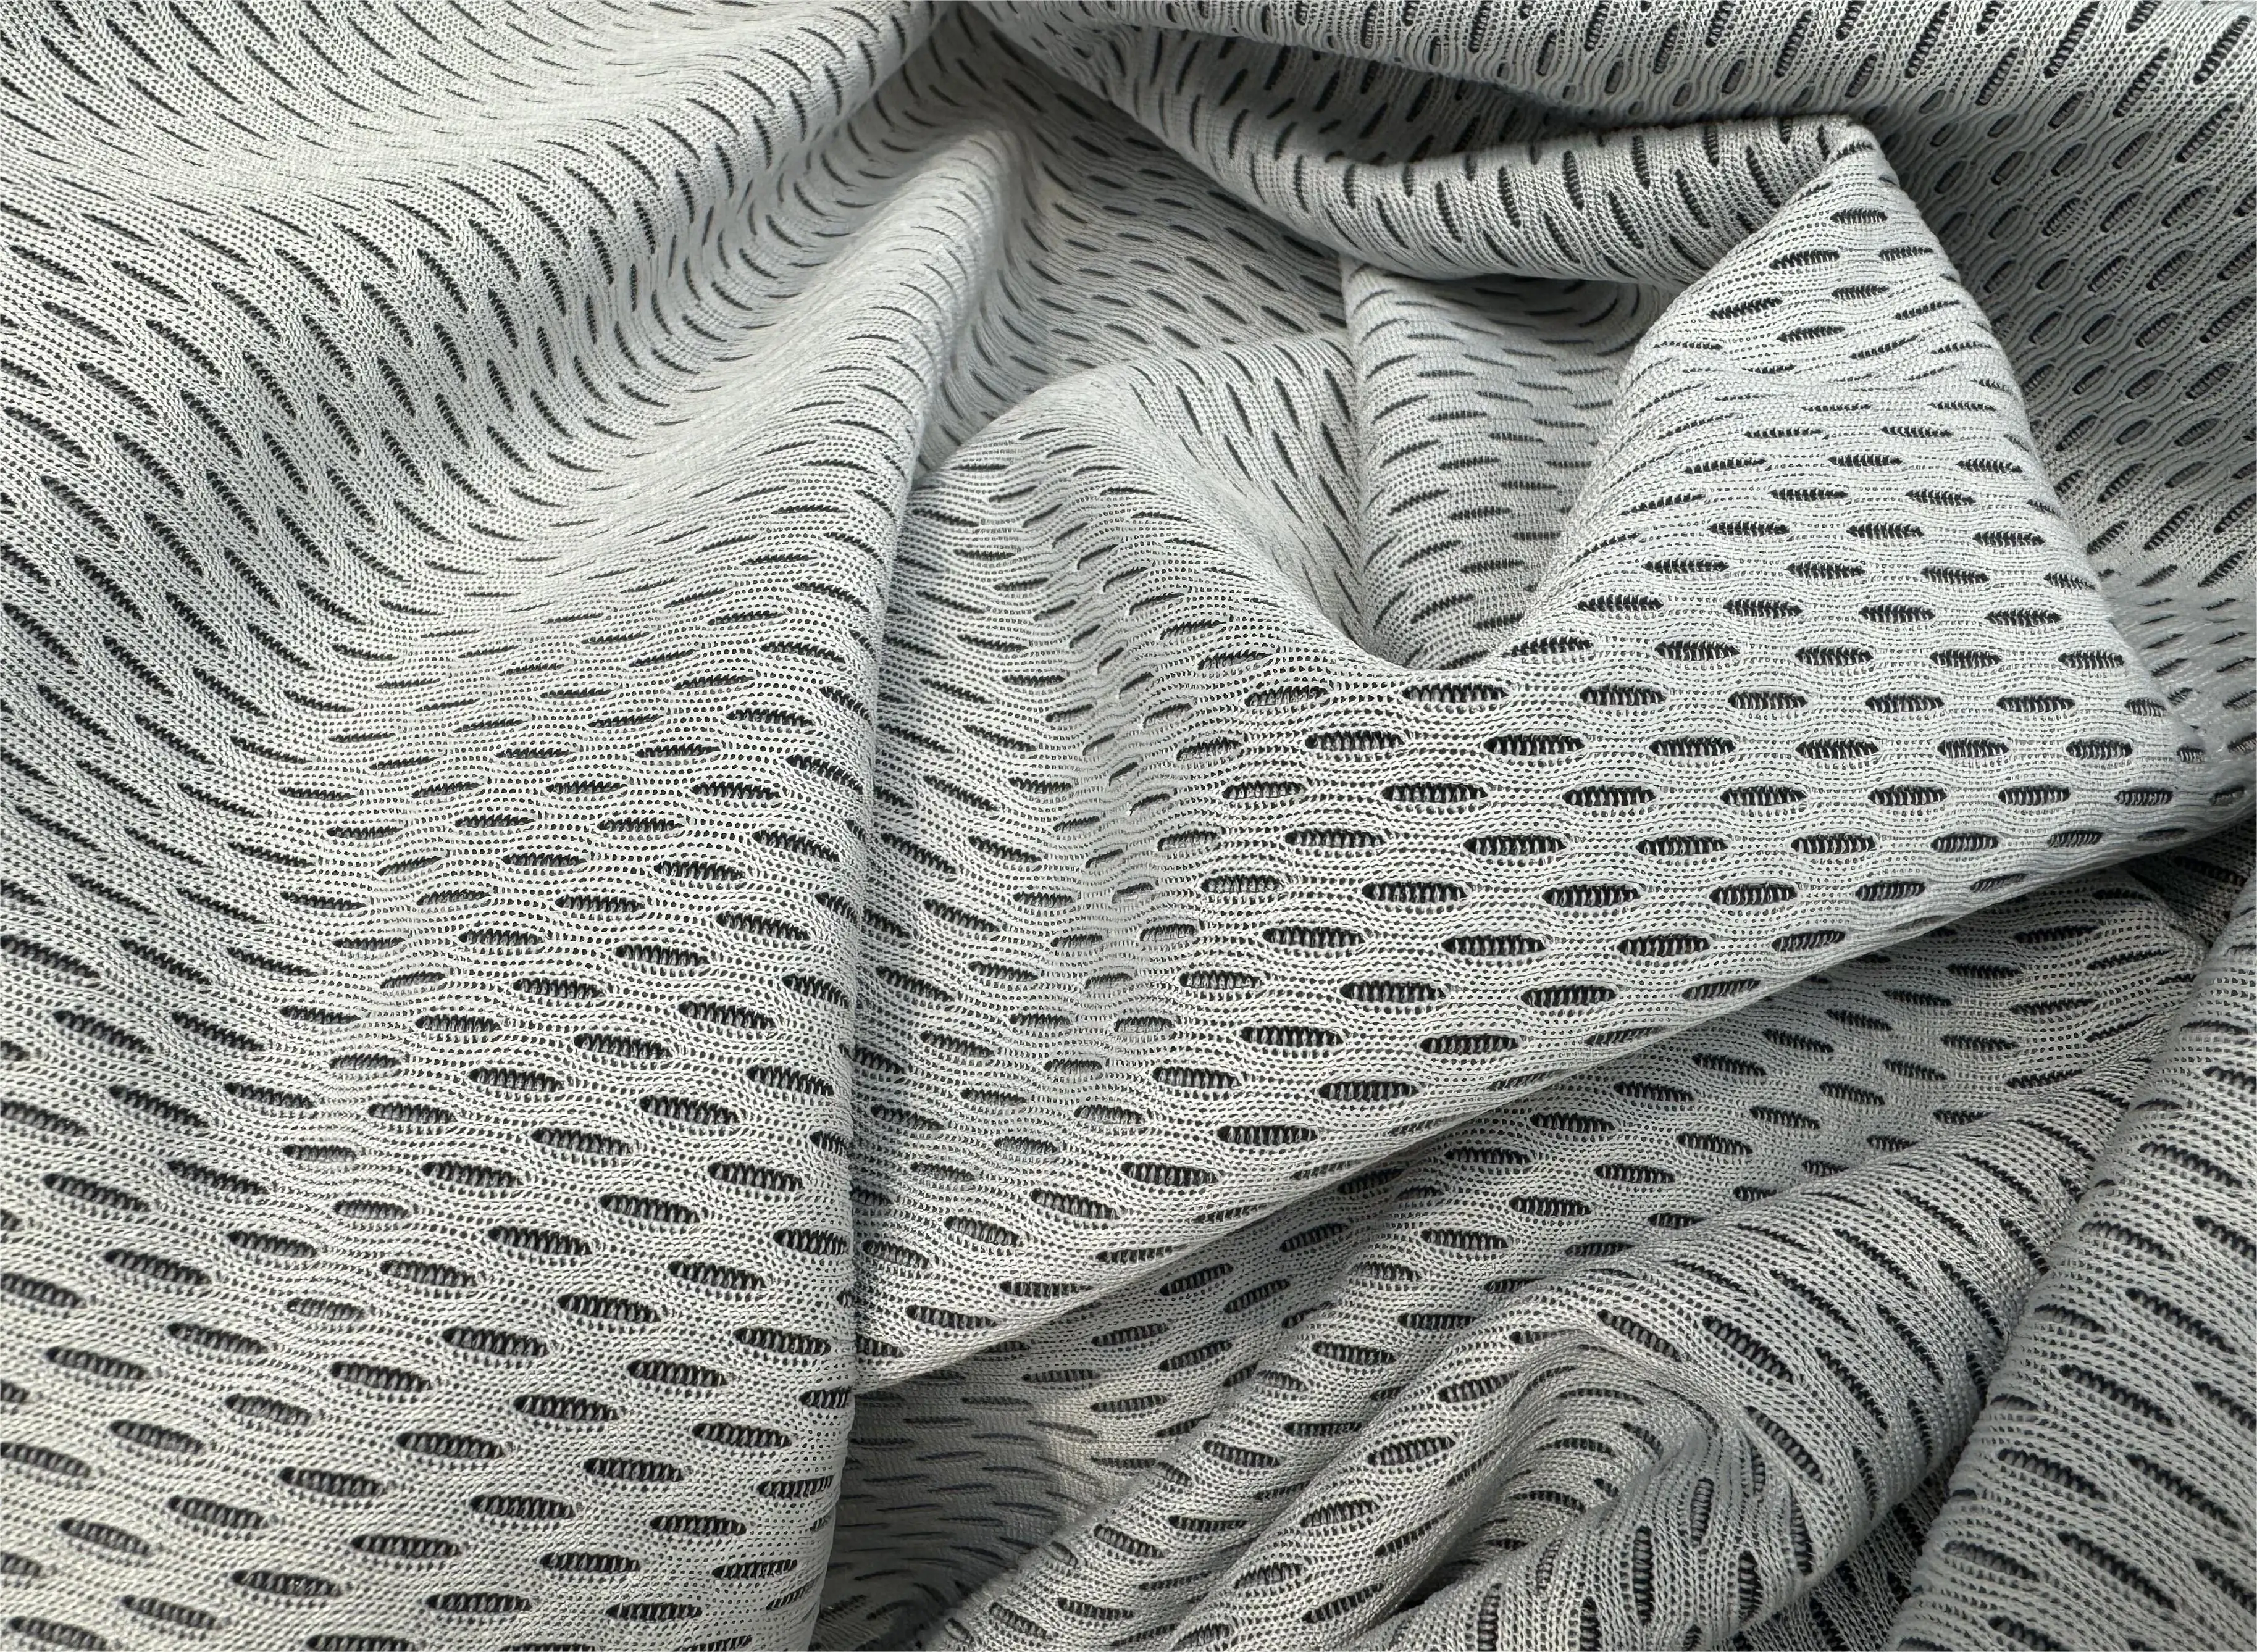 Sarung bantal antilembap kain sarung matras kain jaring mata burung poliester